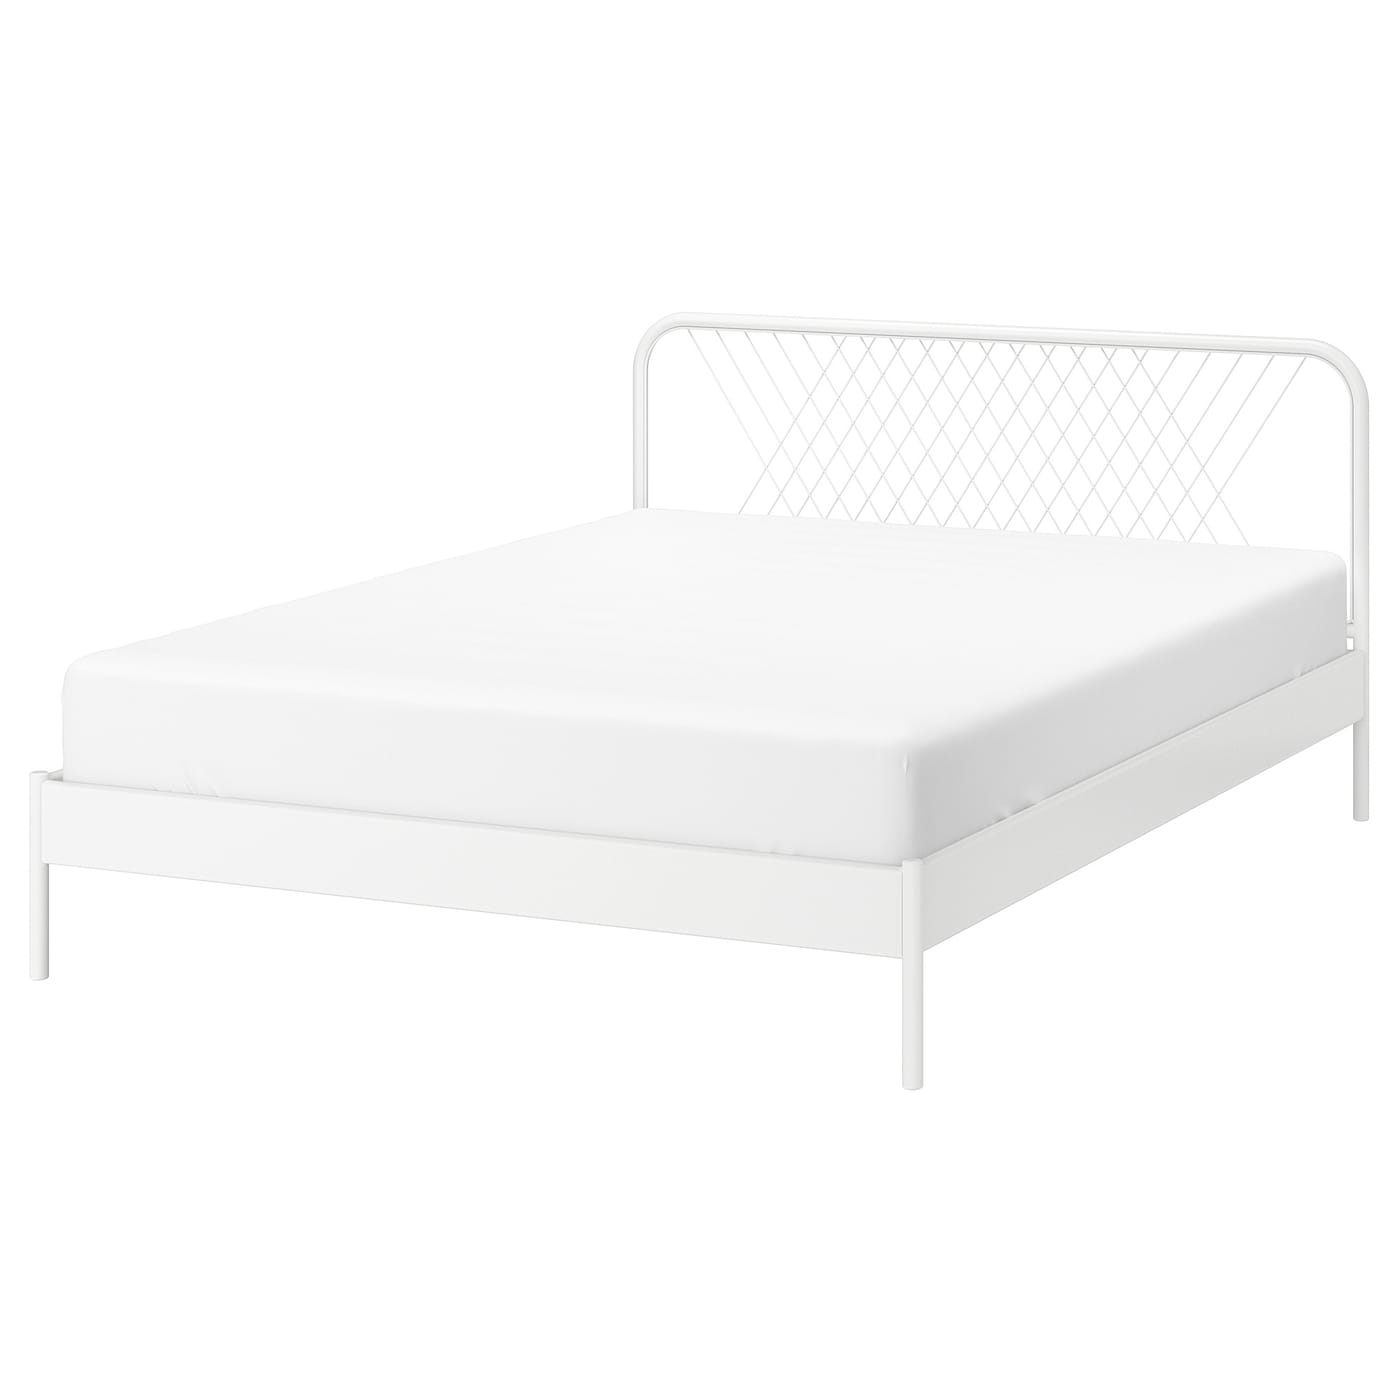 Каркас кровати - IKEA NESTTUN/LURÖY/LUROY, 200х140 см, белый, НЕСТТУН/ЛУРОЙ ИКЕА